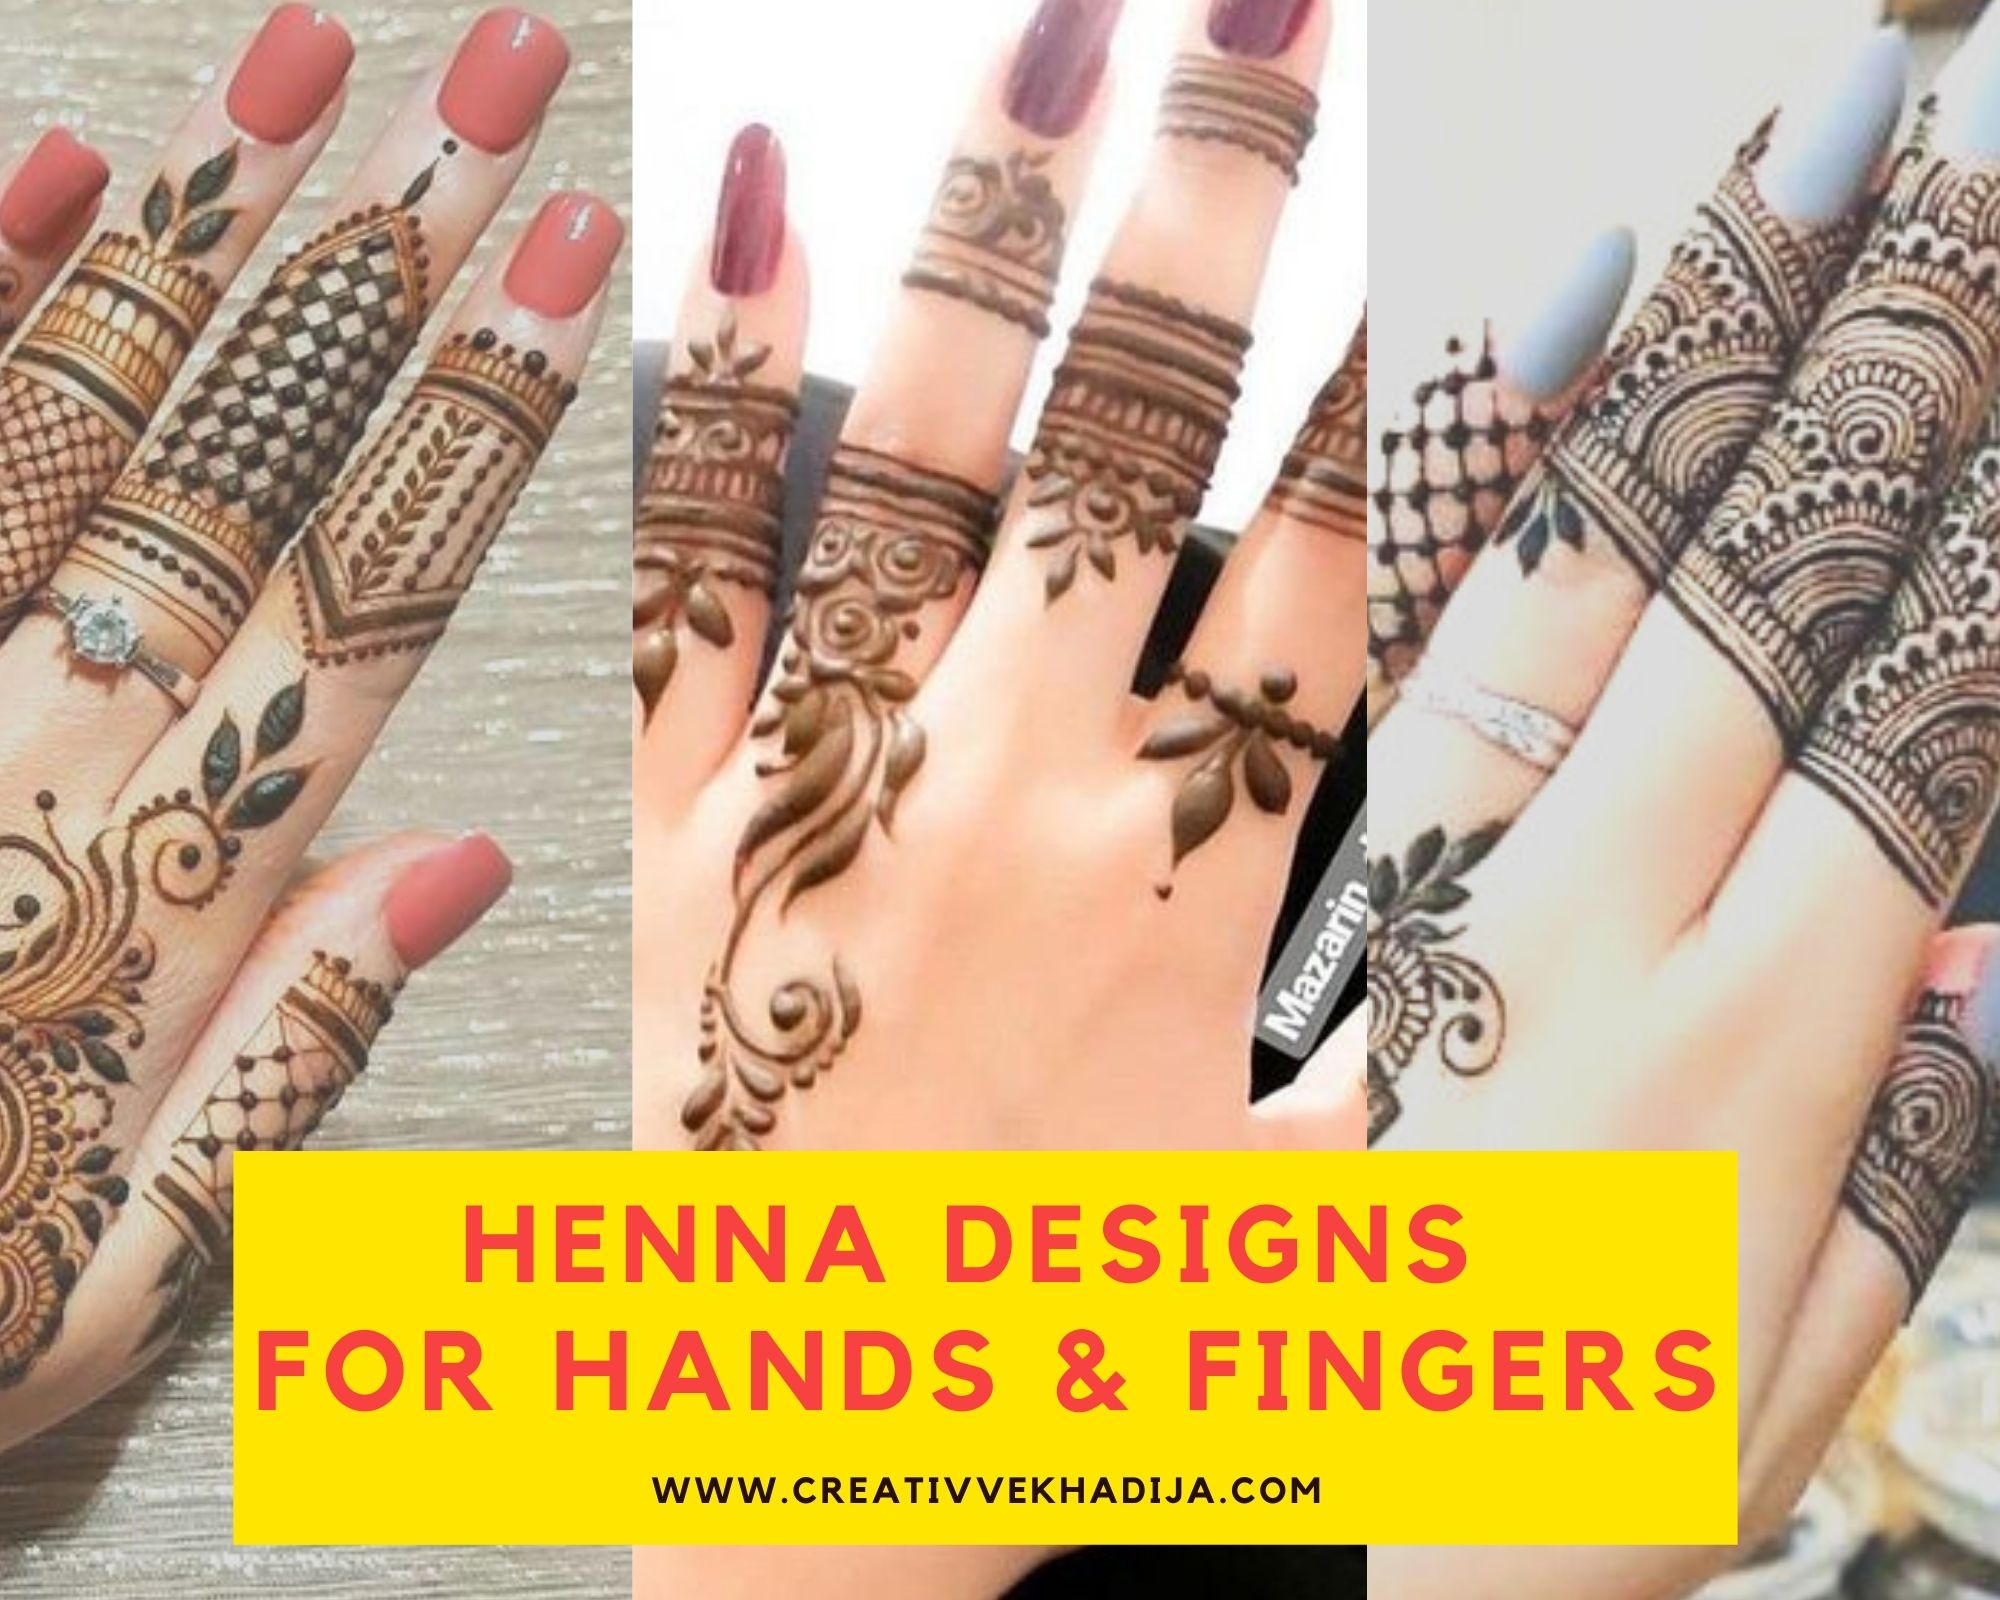 Easy DIY mehndi henna design on fingers - YouTube